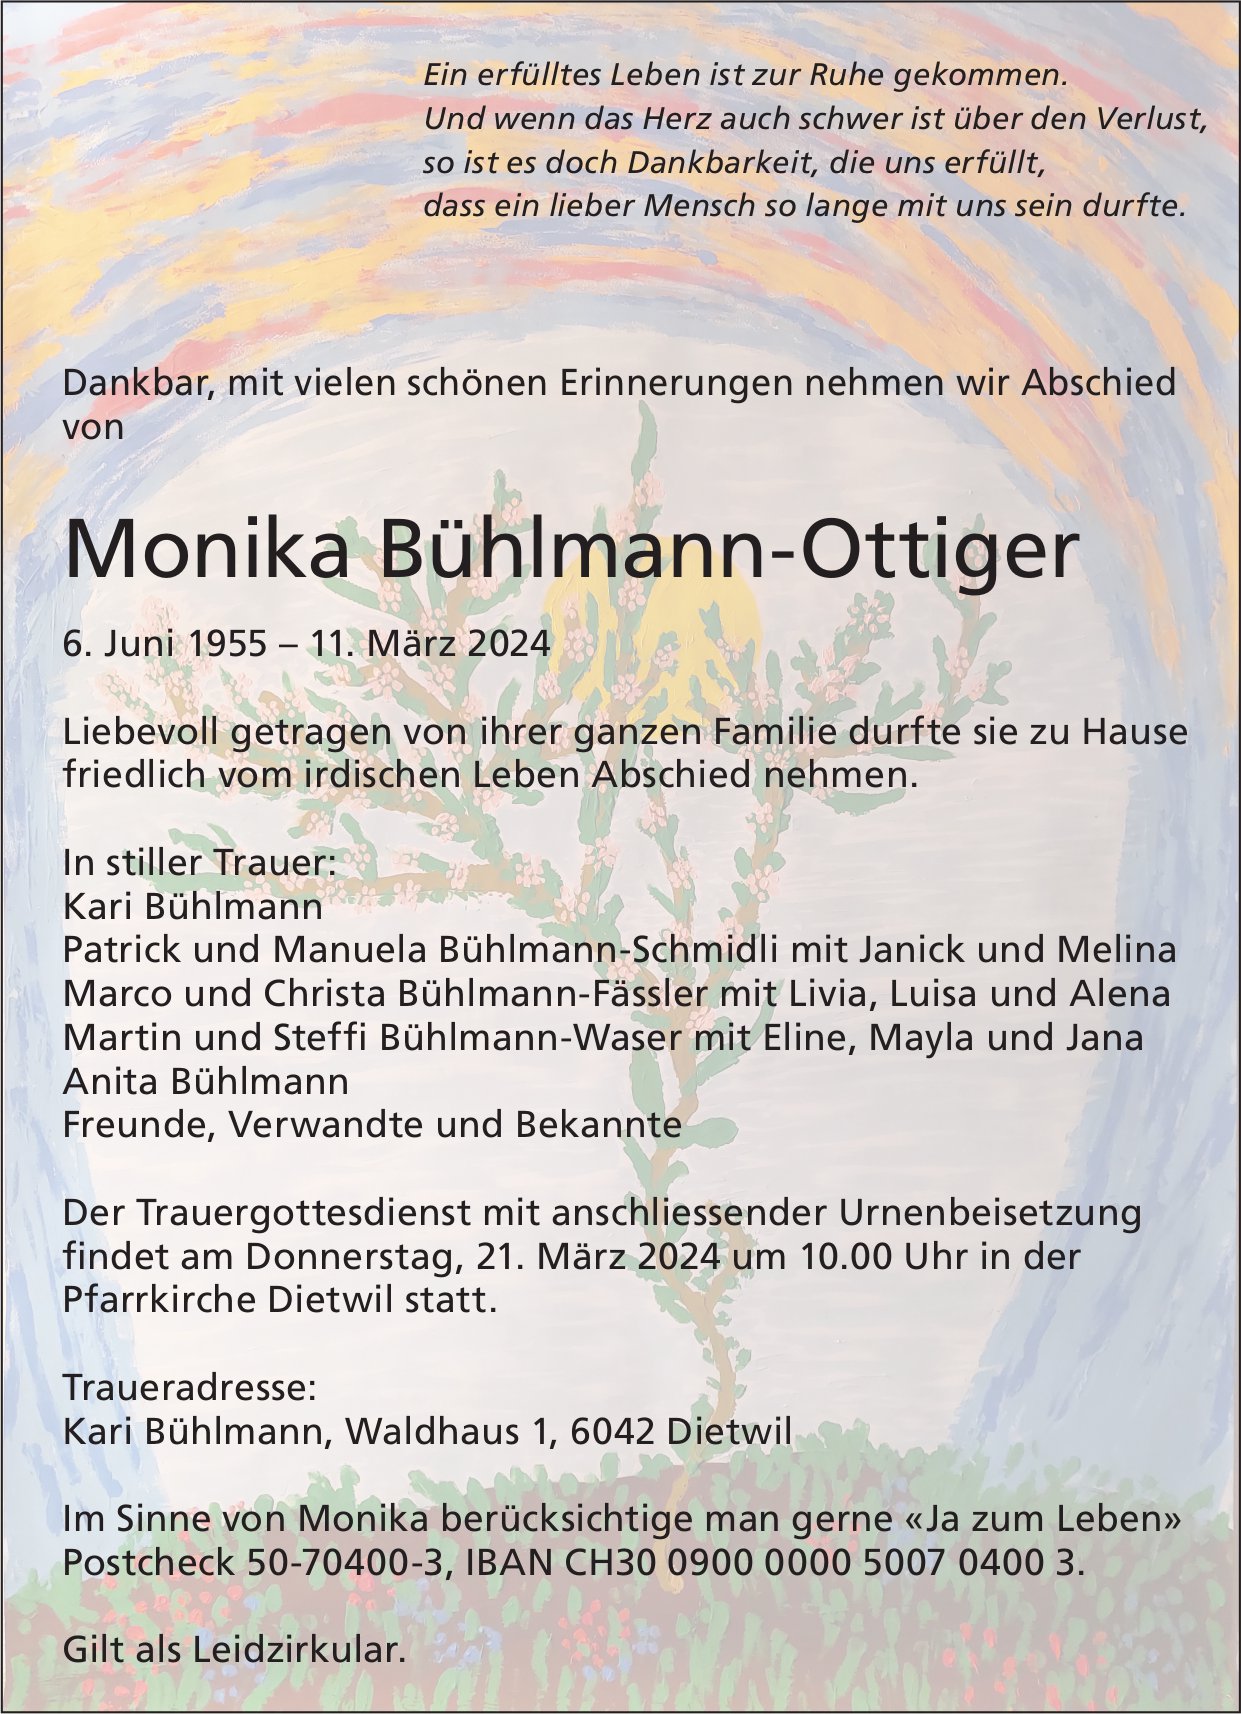 Bühlmann-Ottiger Monika, März 2024 / TA